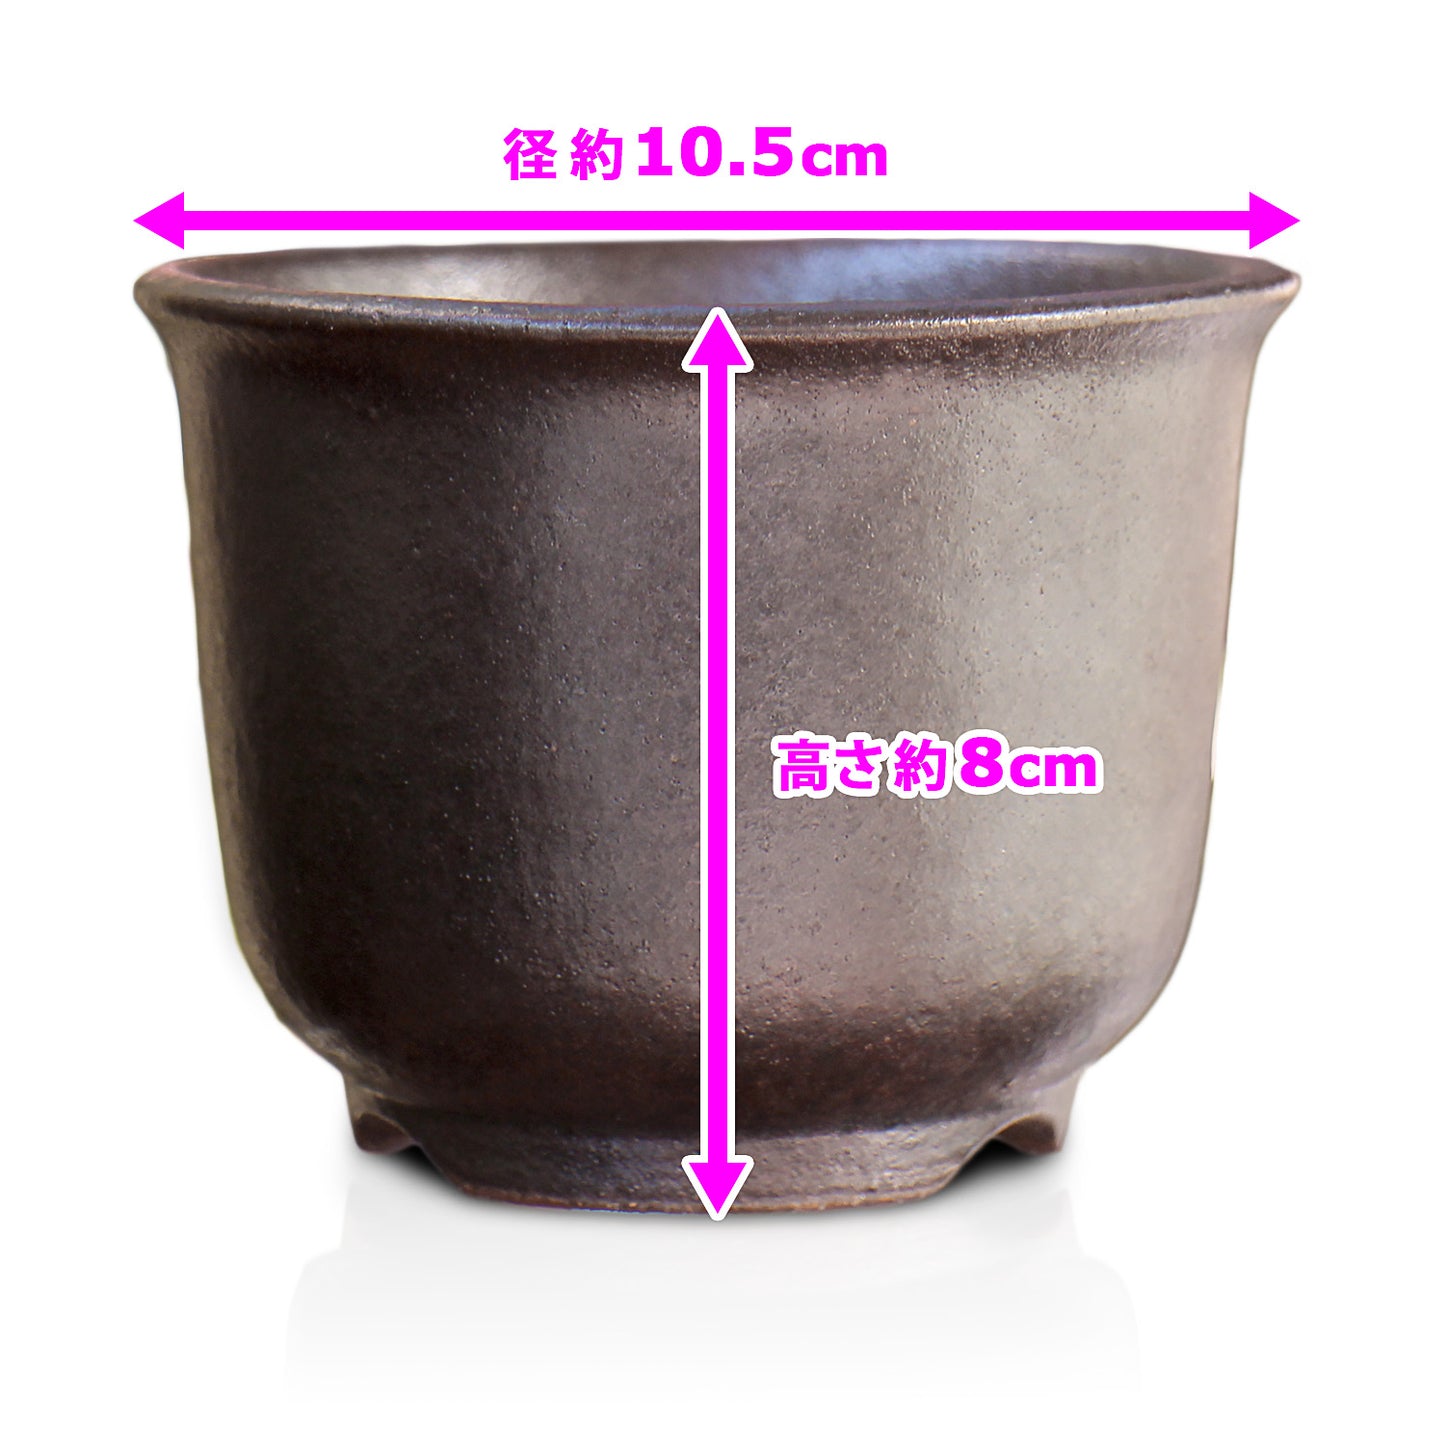 盆栽鉢 尻丸 黒 3号 四日市萬古焼 丸 円形 陶器 約10.5センチ